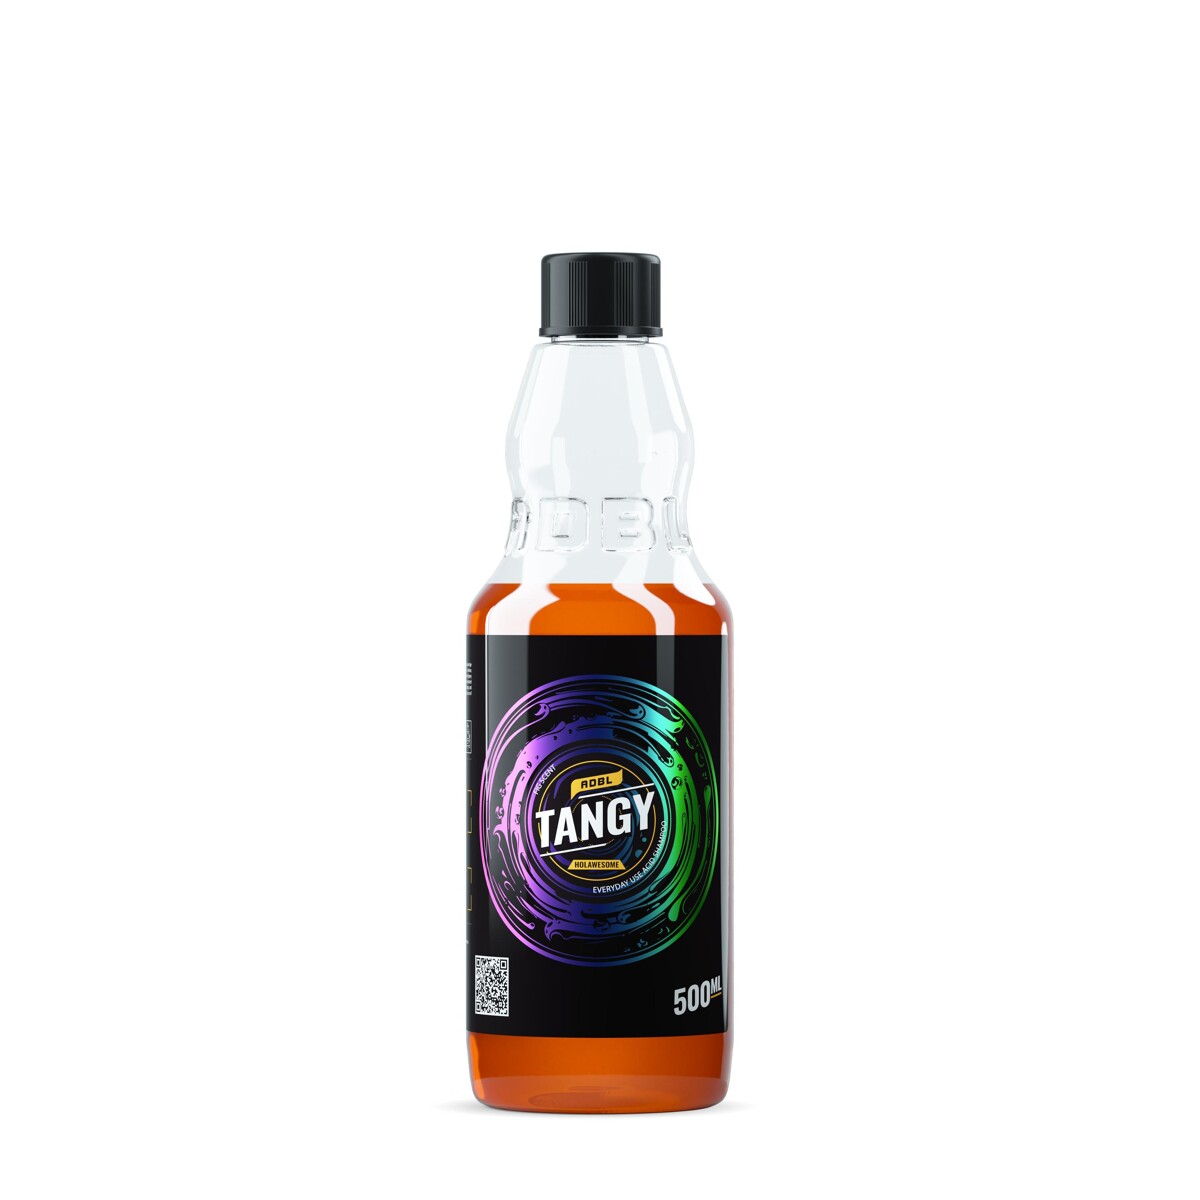 ADBL Tangy 0,5L (Shampoo)